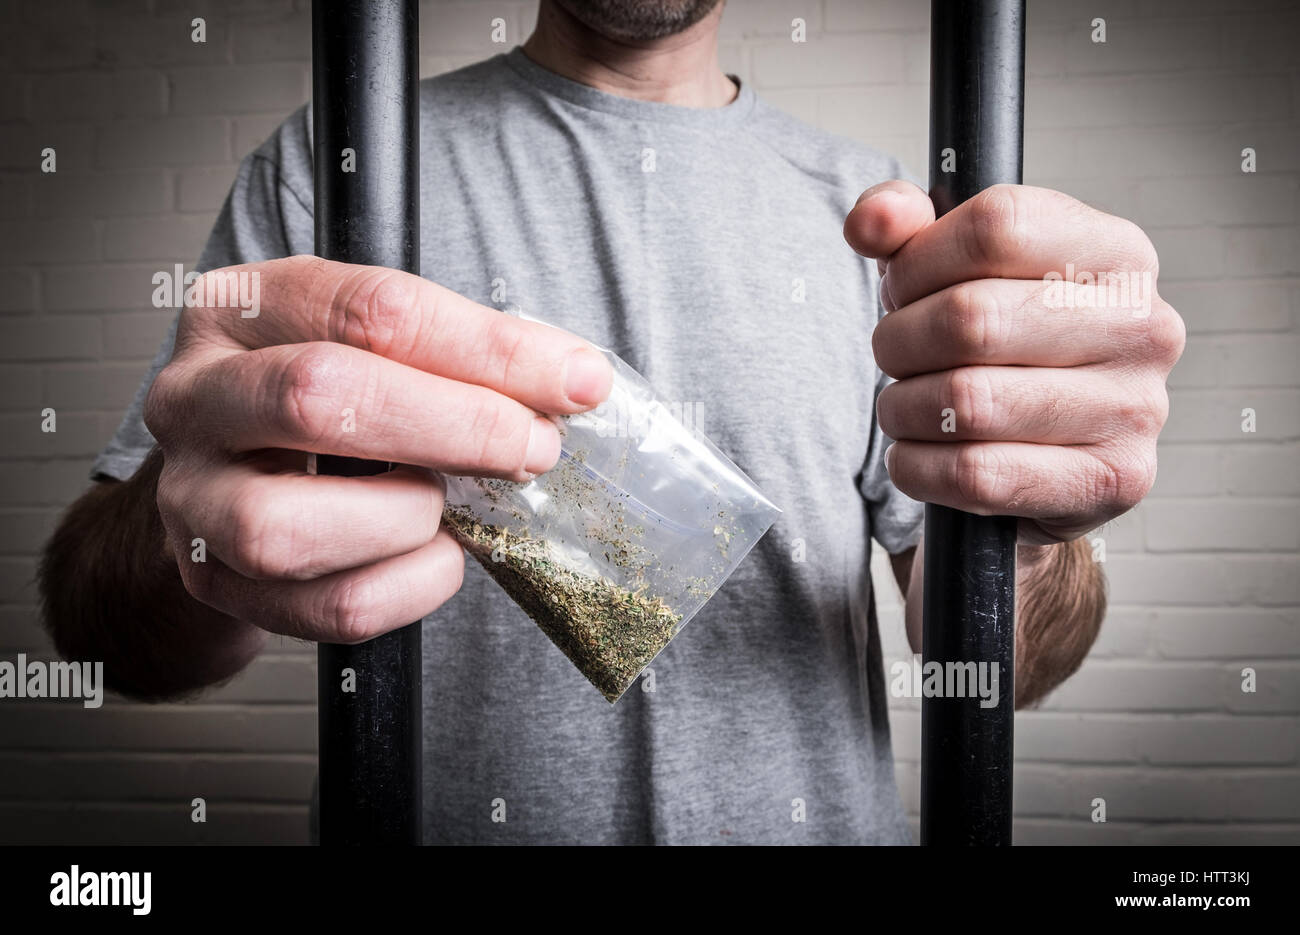 Ein Gefangener hinter Gittern im Gefängnis mit Drogen oder legale Aufputschmittel Spice (Foto von Modell veranschaulichen das Thema Drogen in UK Gefängnissen ausgehenden) Stockfoto